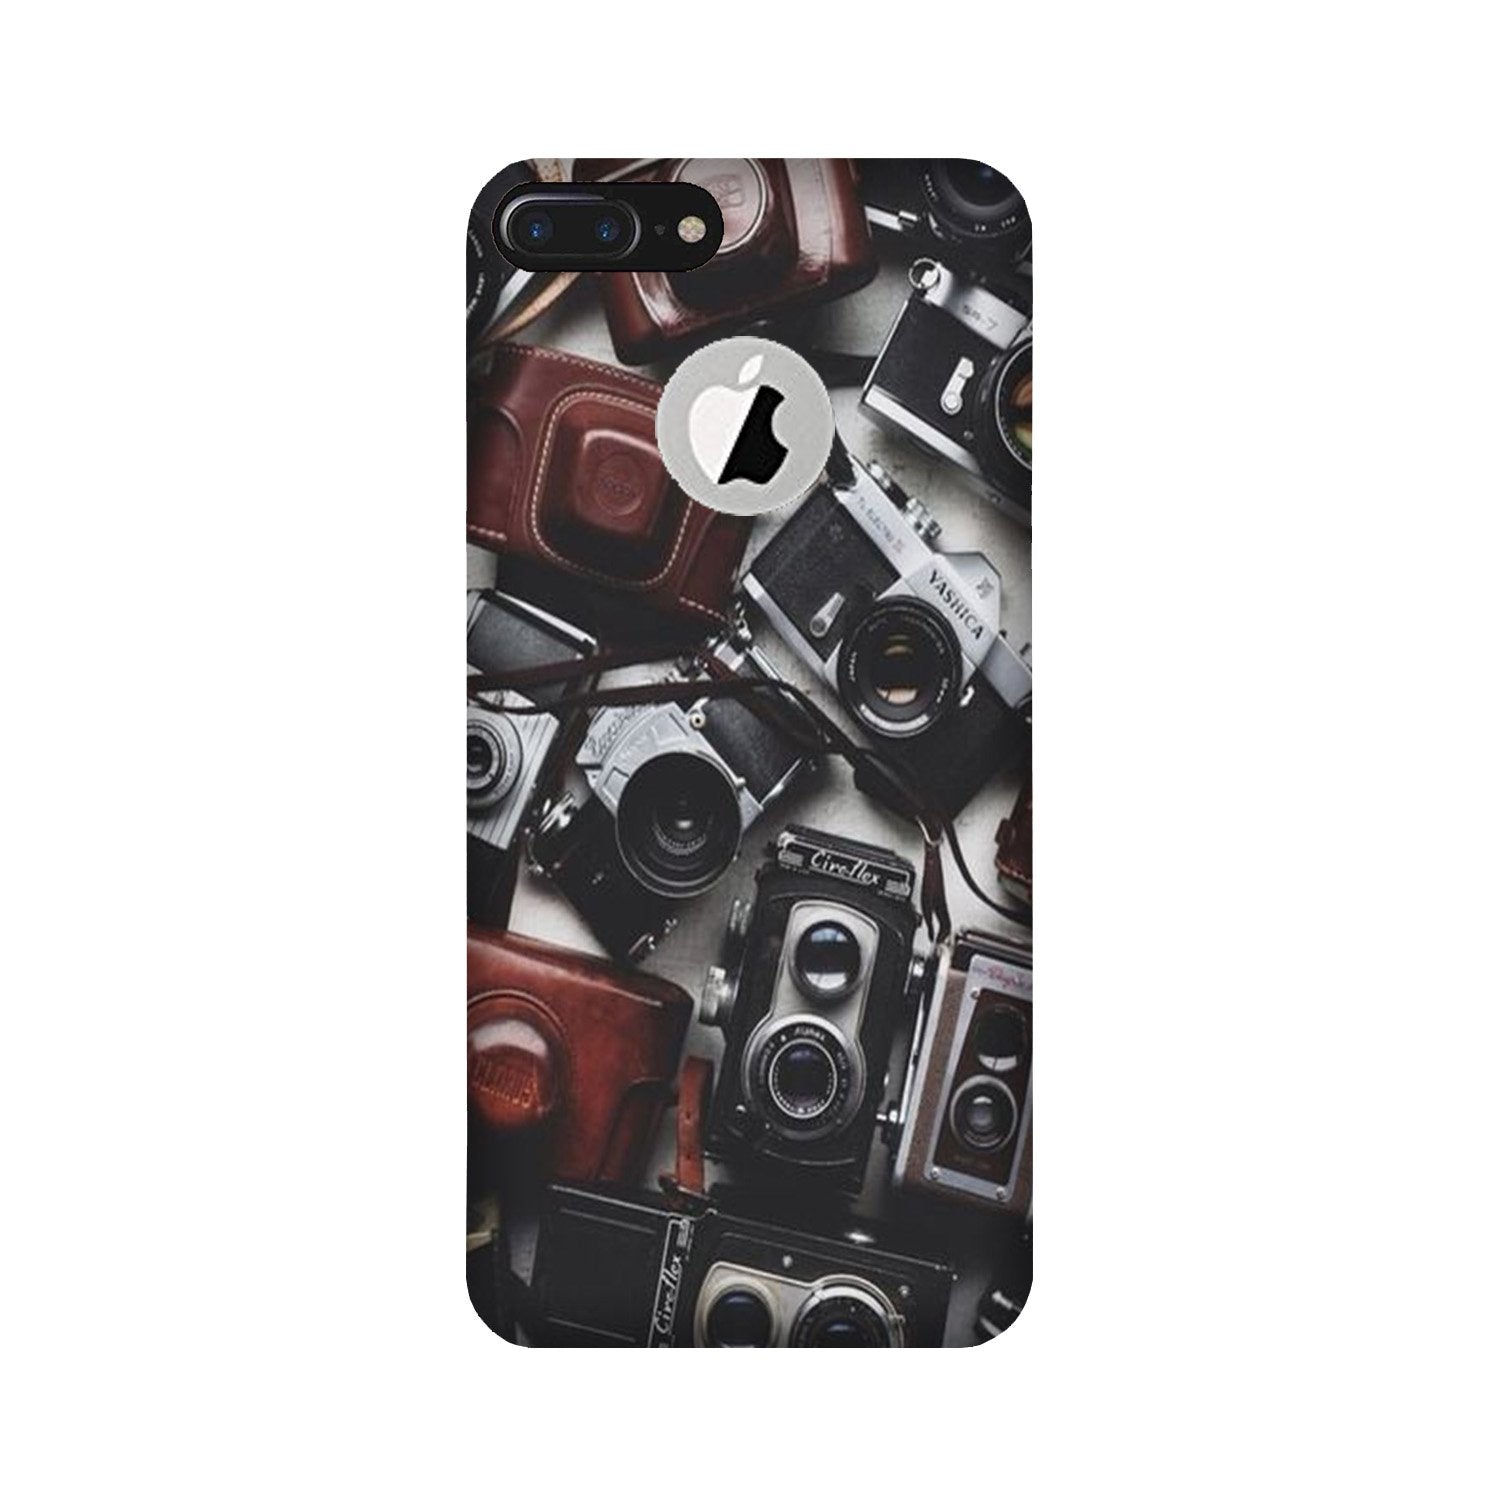 Cameras Case for iPhone 7 Plus logo cut